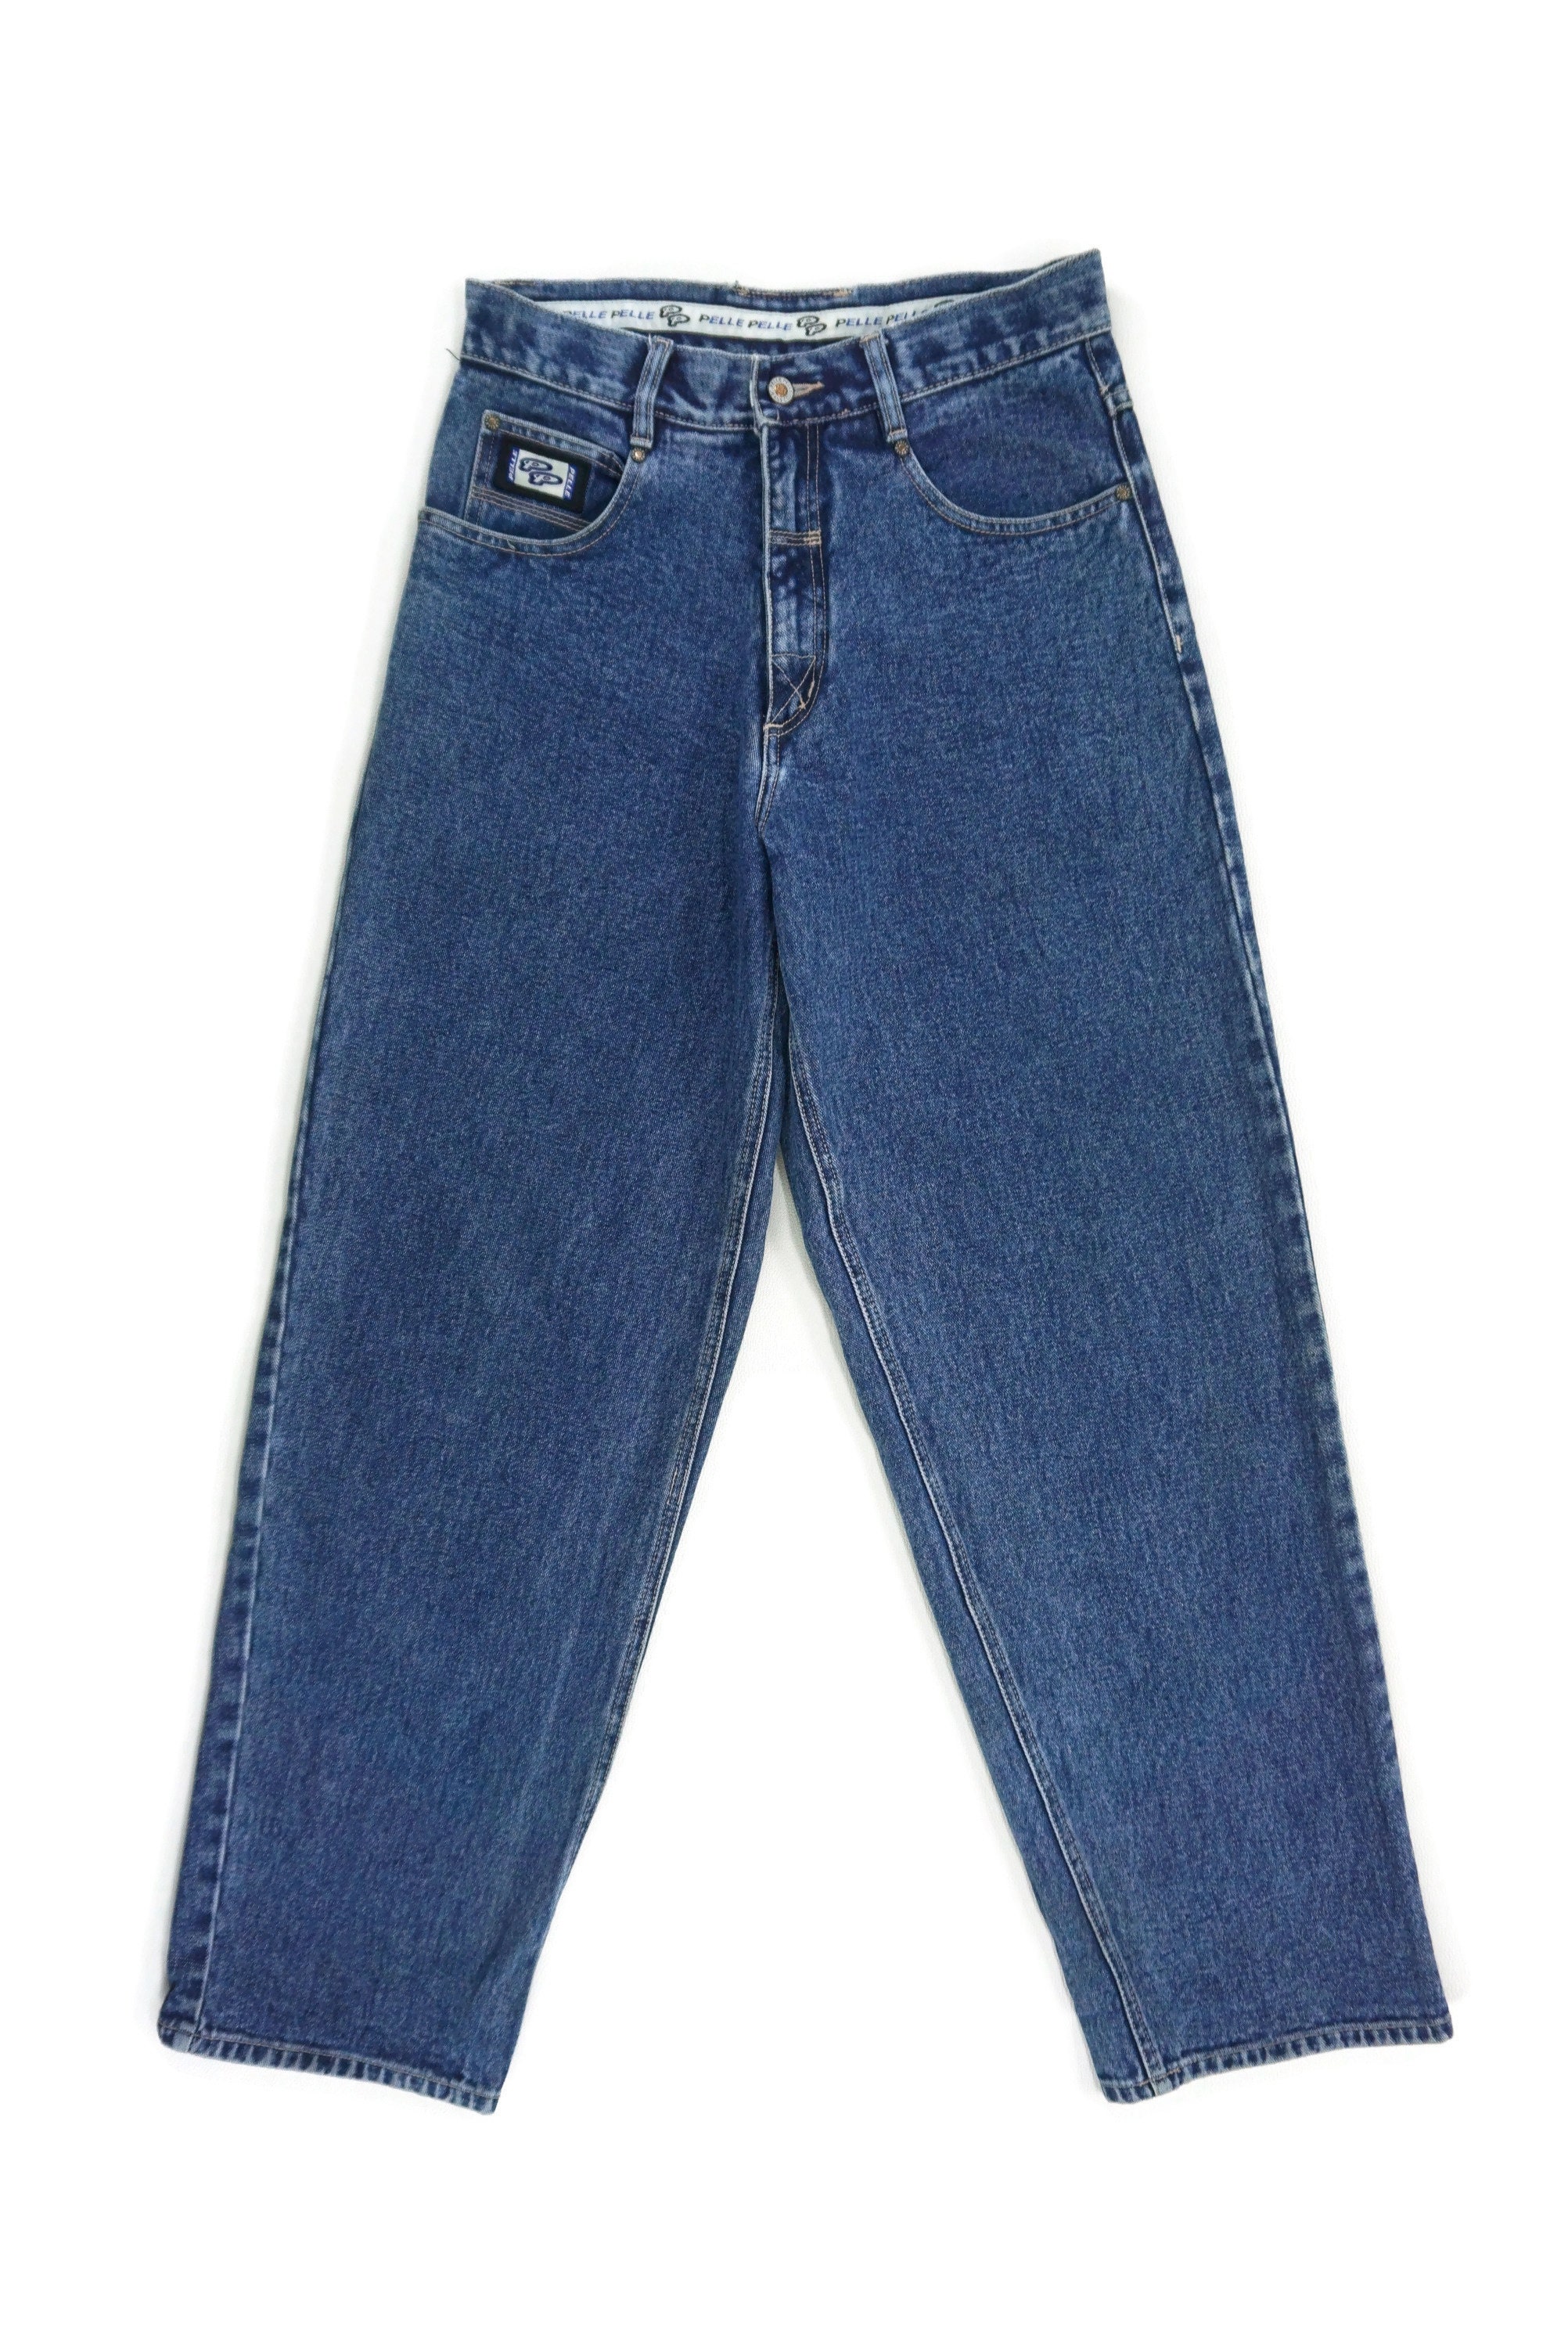 Pelle Pelle Jeans Size 30 W31xL32 Vintage Pelle Pelle Denim | Etsy